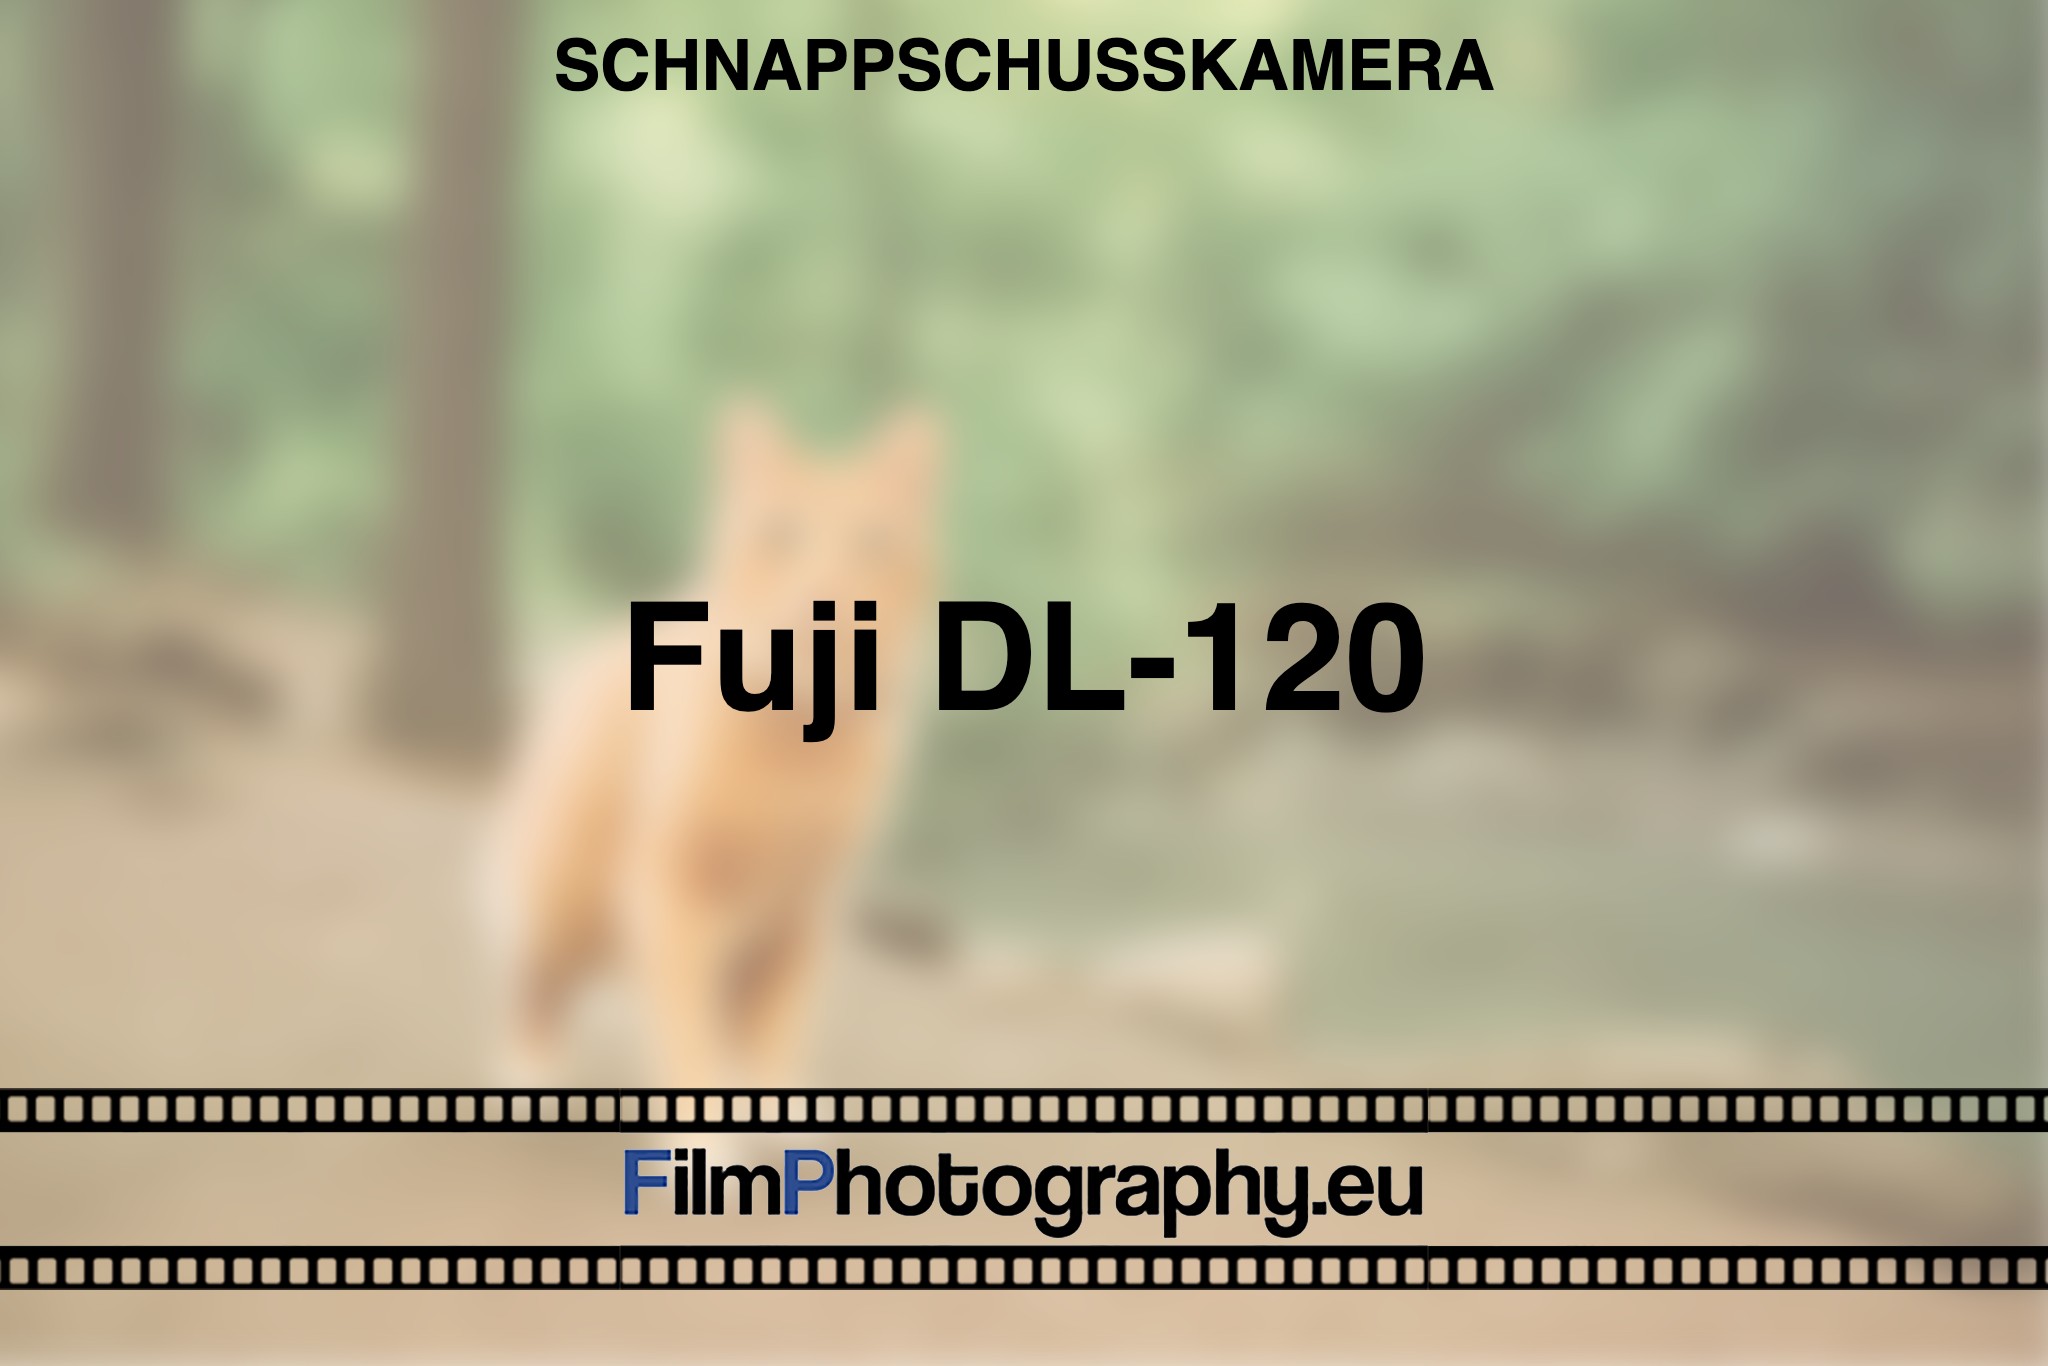 fuji-dl-120-schnappschusskamera-bnv